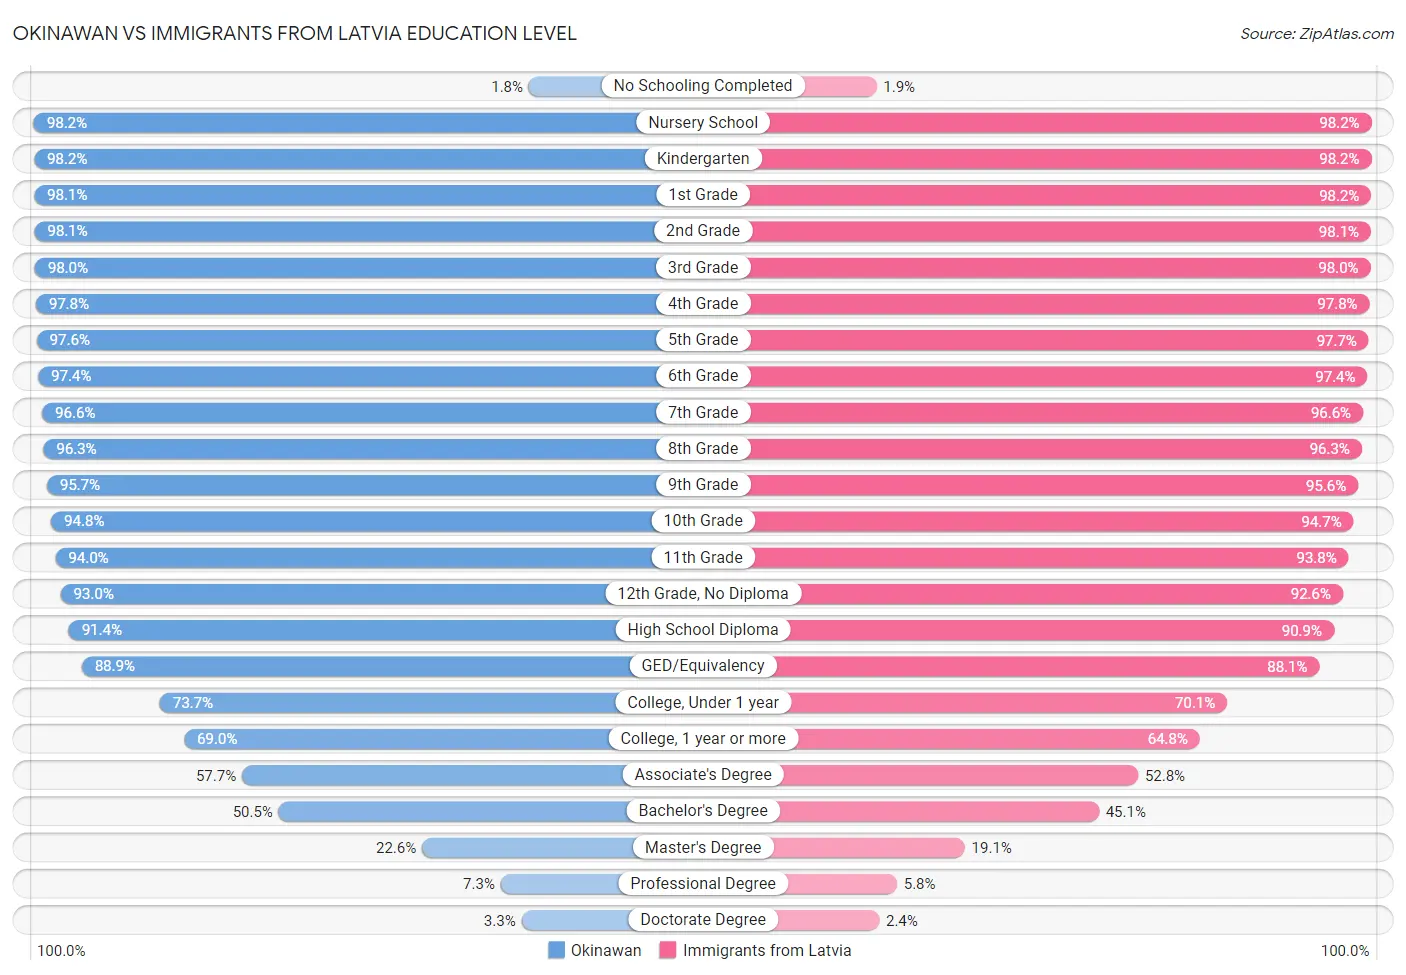 Okinawan vs Immigrants from Latvia Education Level